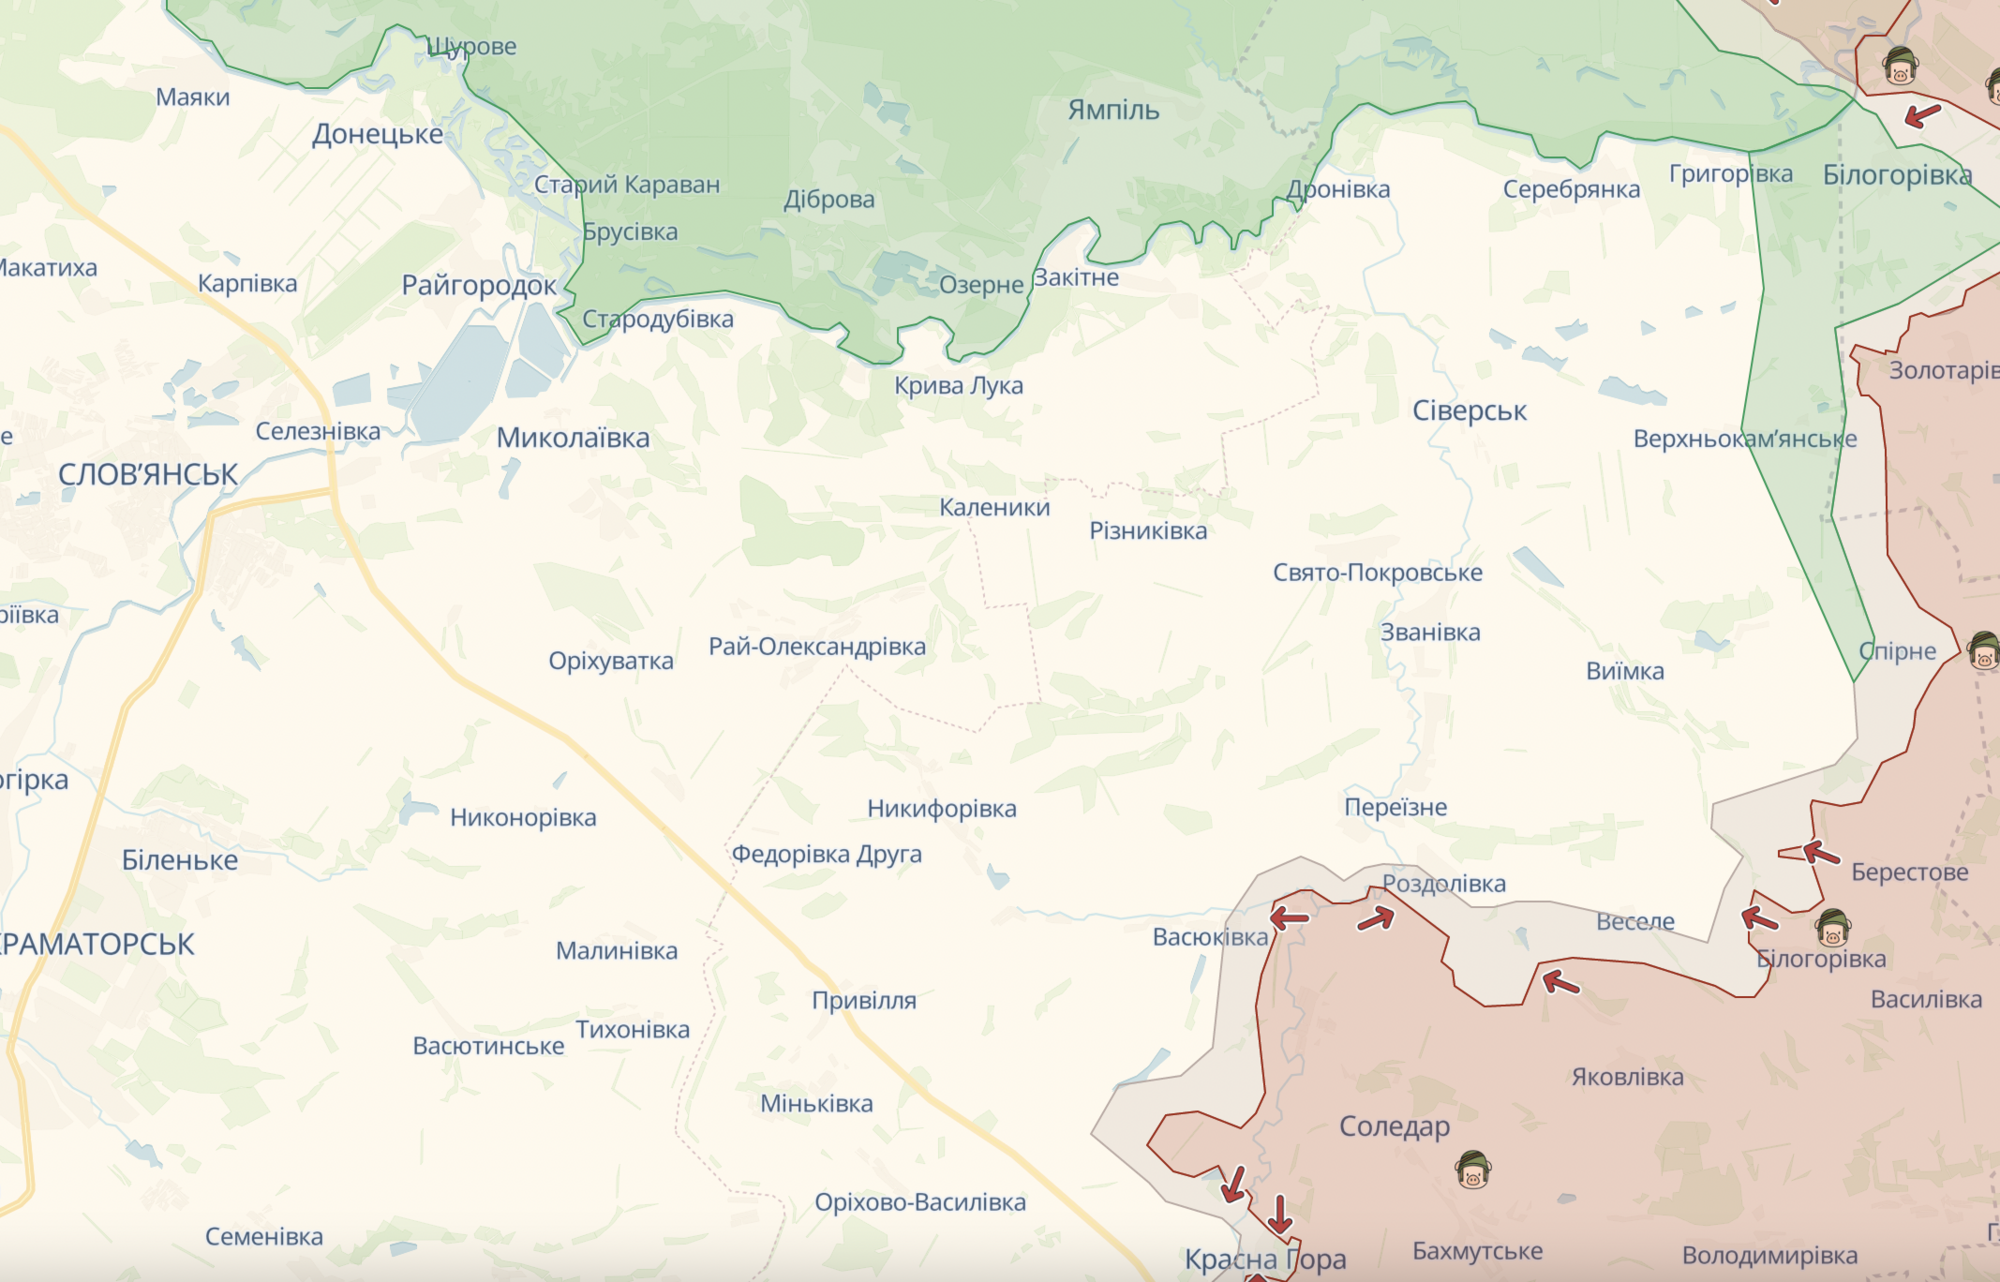 ГУР: Шойгу официально отчитывается о несуществующих победах в Украине, конфликт военных с ''вагнеровцами'' набирает обороты